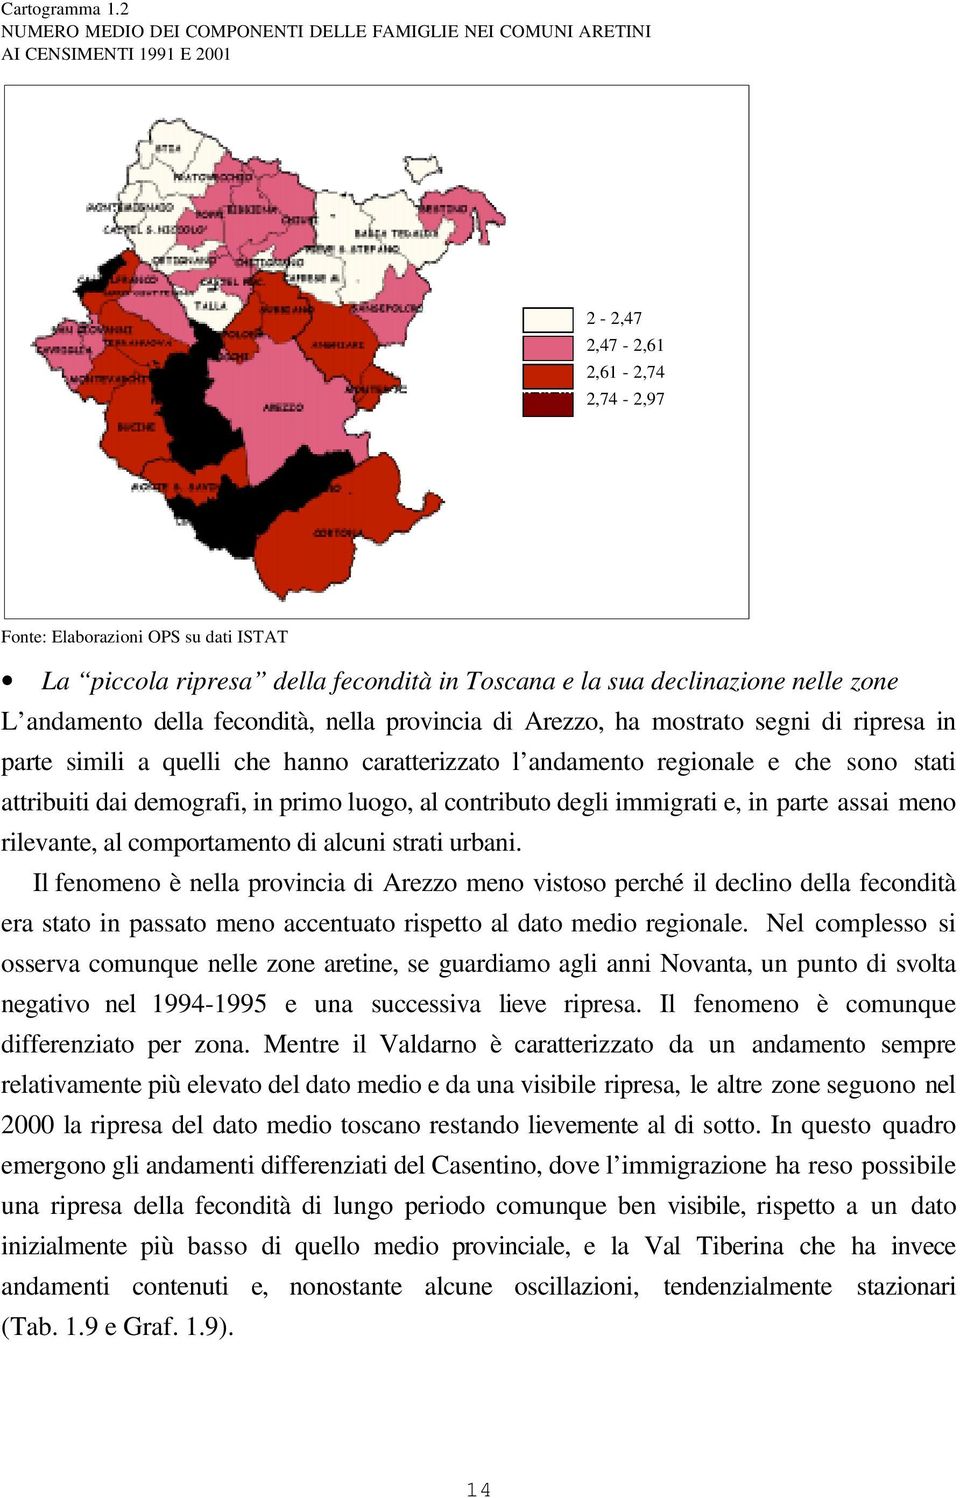 in Toscana e la sua declinazione nelle zone L andamento della fecondità, nella provincia di Arezzo, ha mostrato segni di ripresa in parte simili a quelli che hanno caratterizzato l andamento